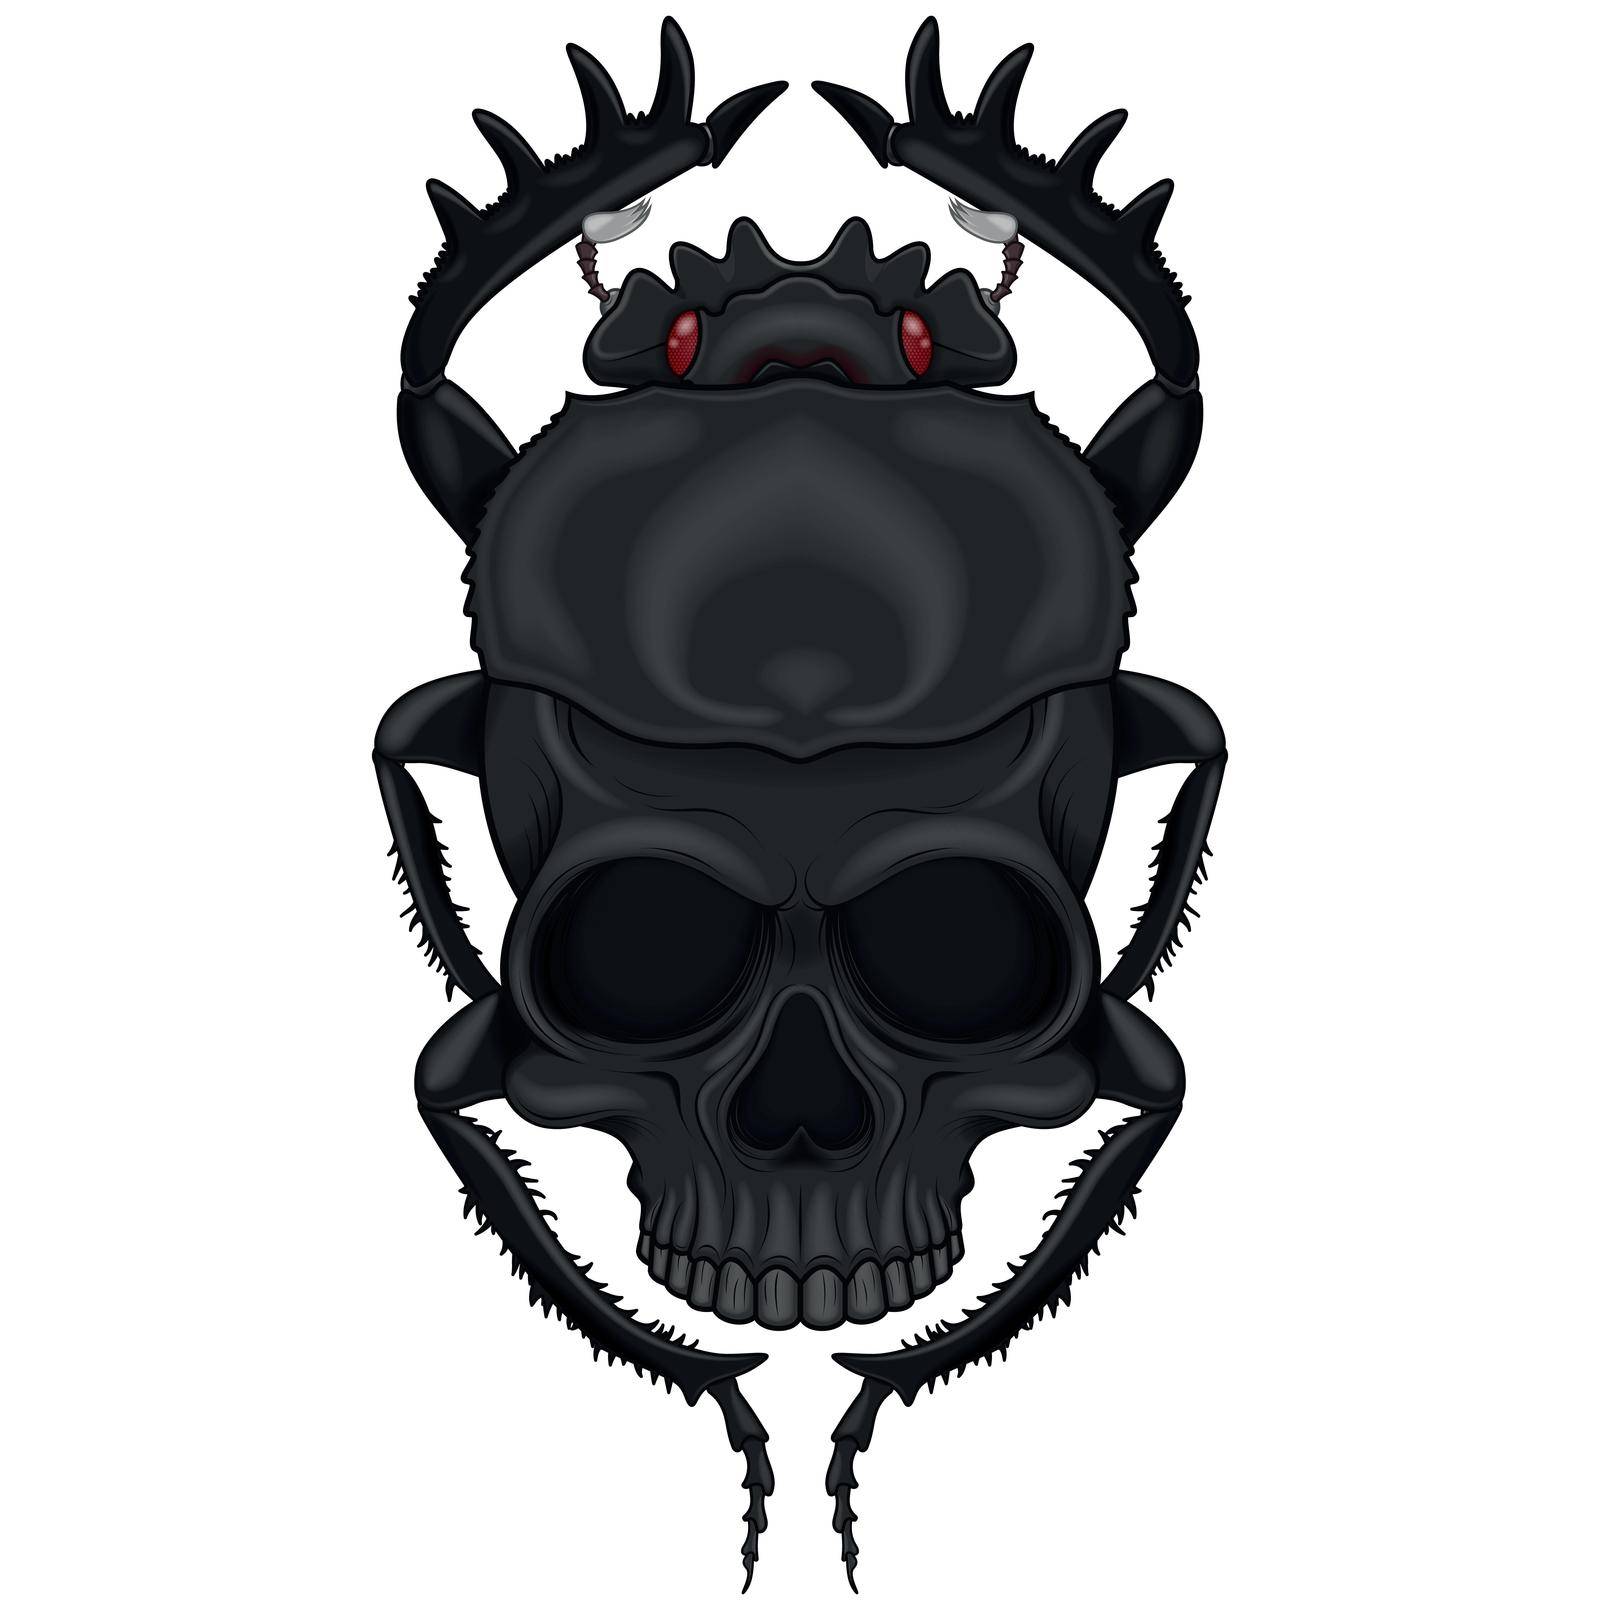 Scary Beetle Skull Skin by deibyvargas